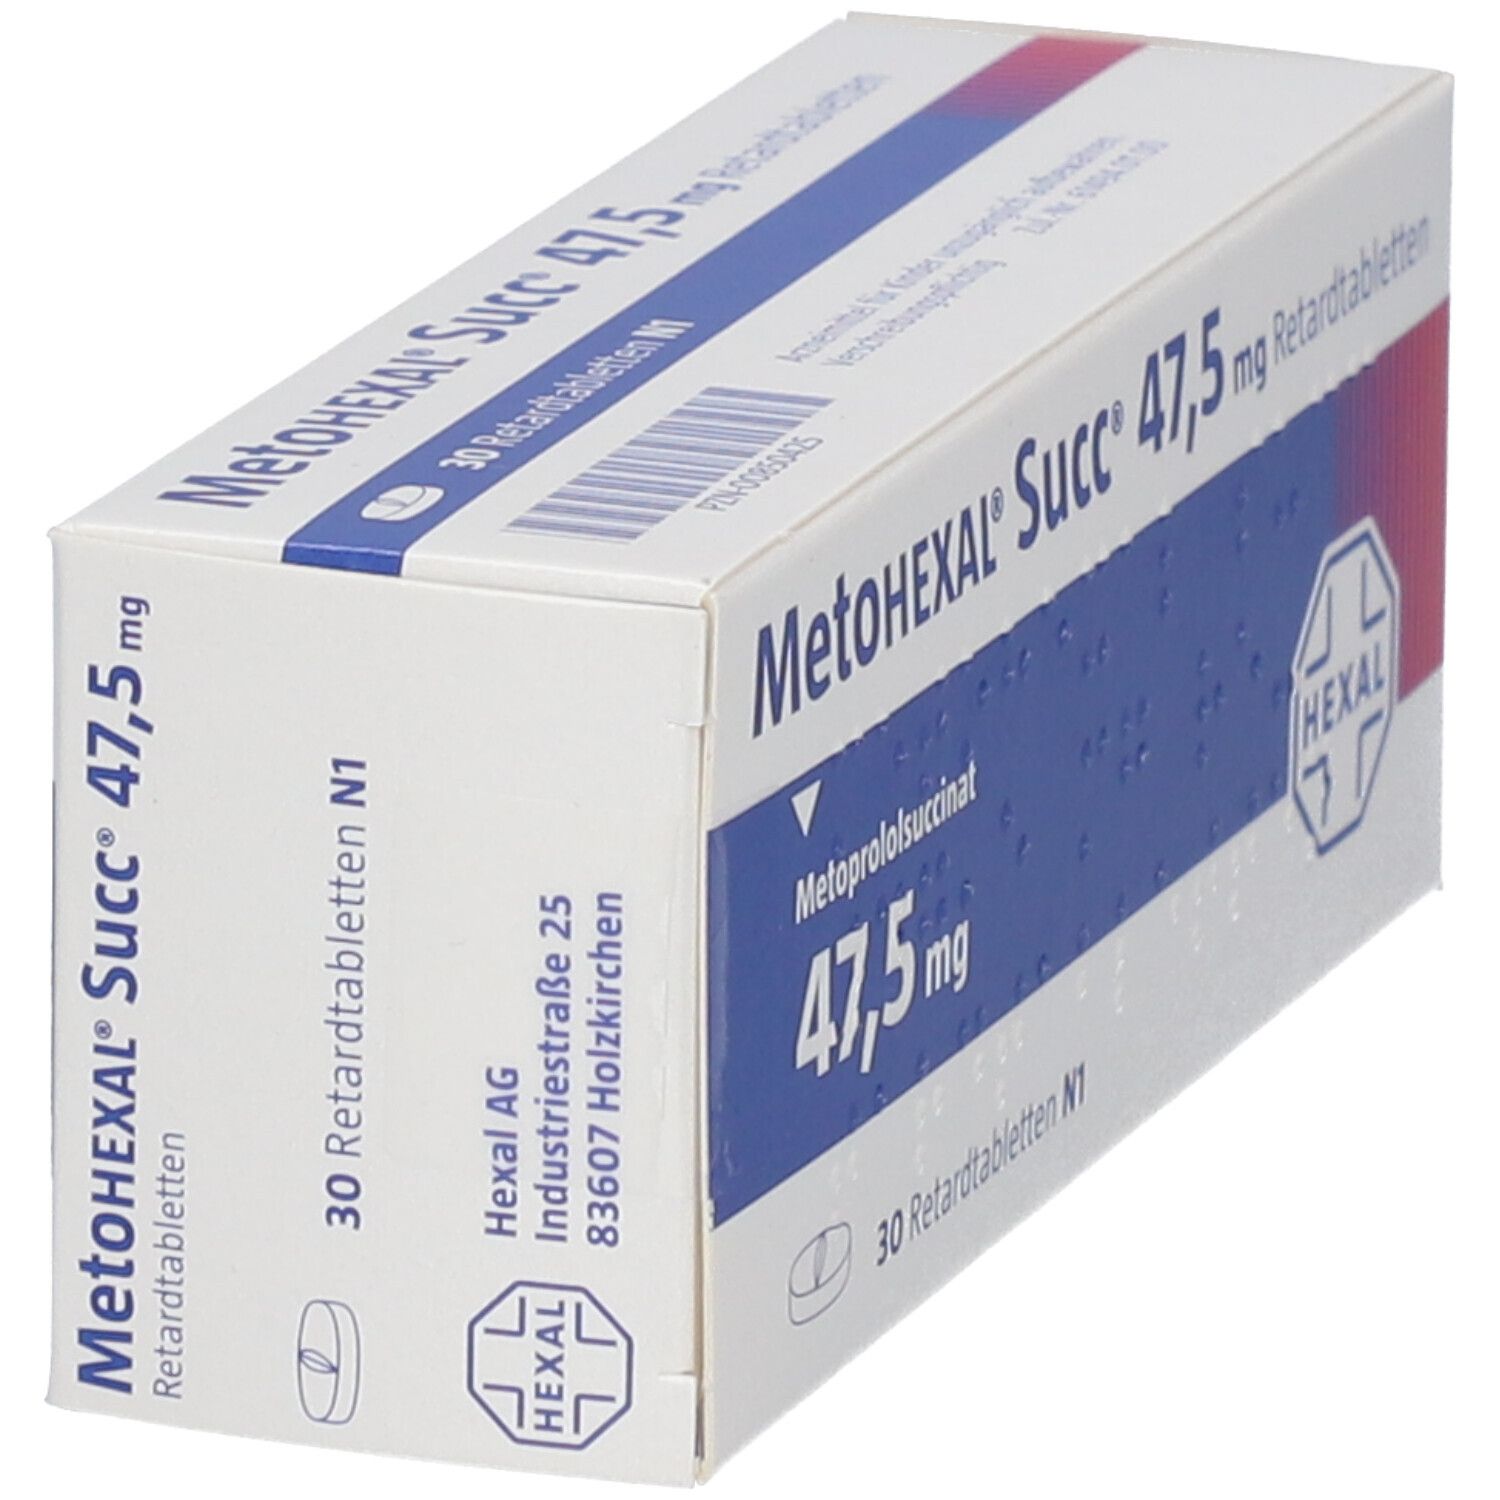 MetoHEXAL® Succ® 47,5 mg